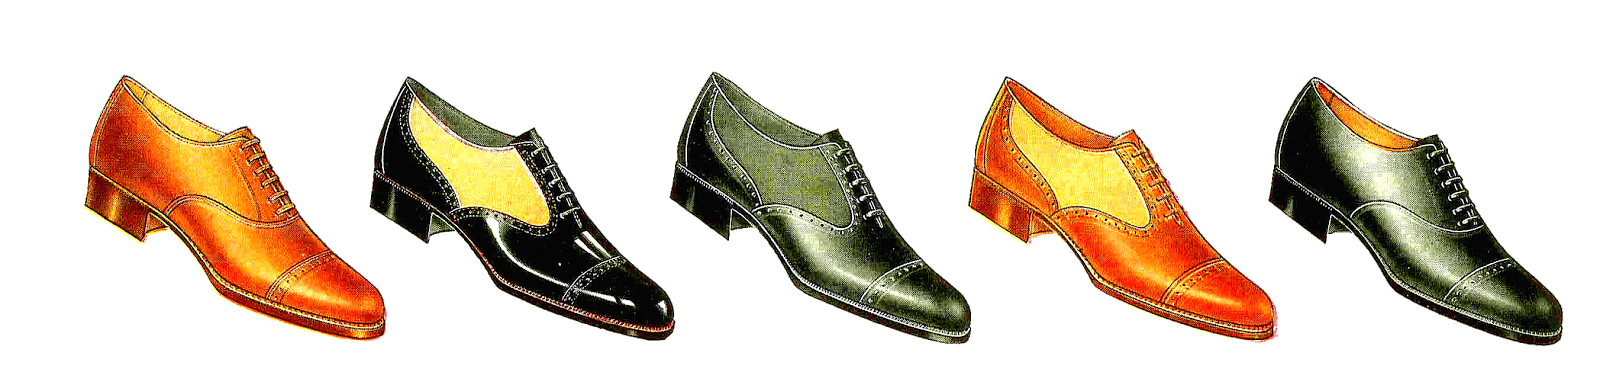 Antique Images: Free Fashion Clip Art: 5 Vintage Men's Shoe ...